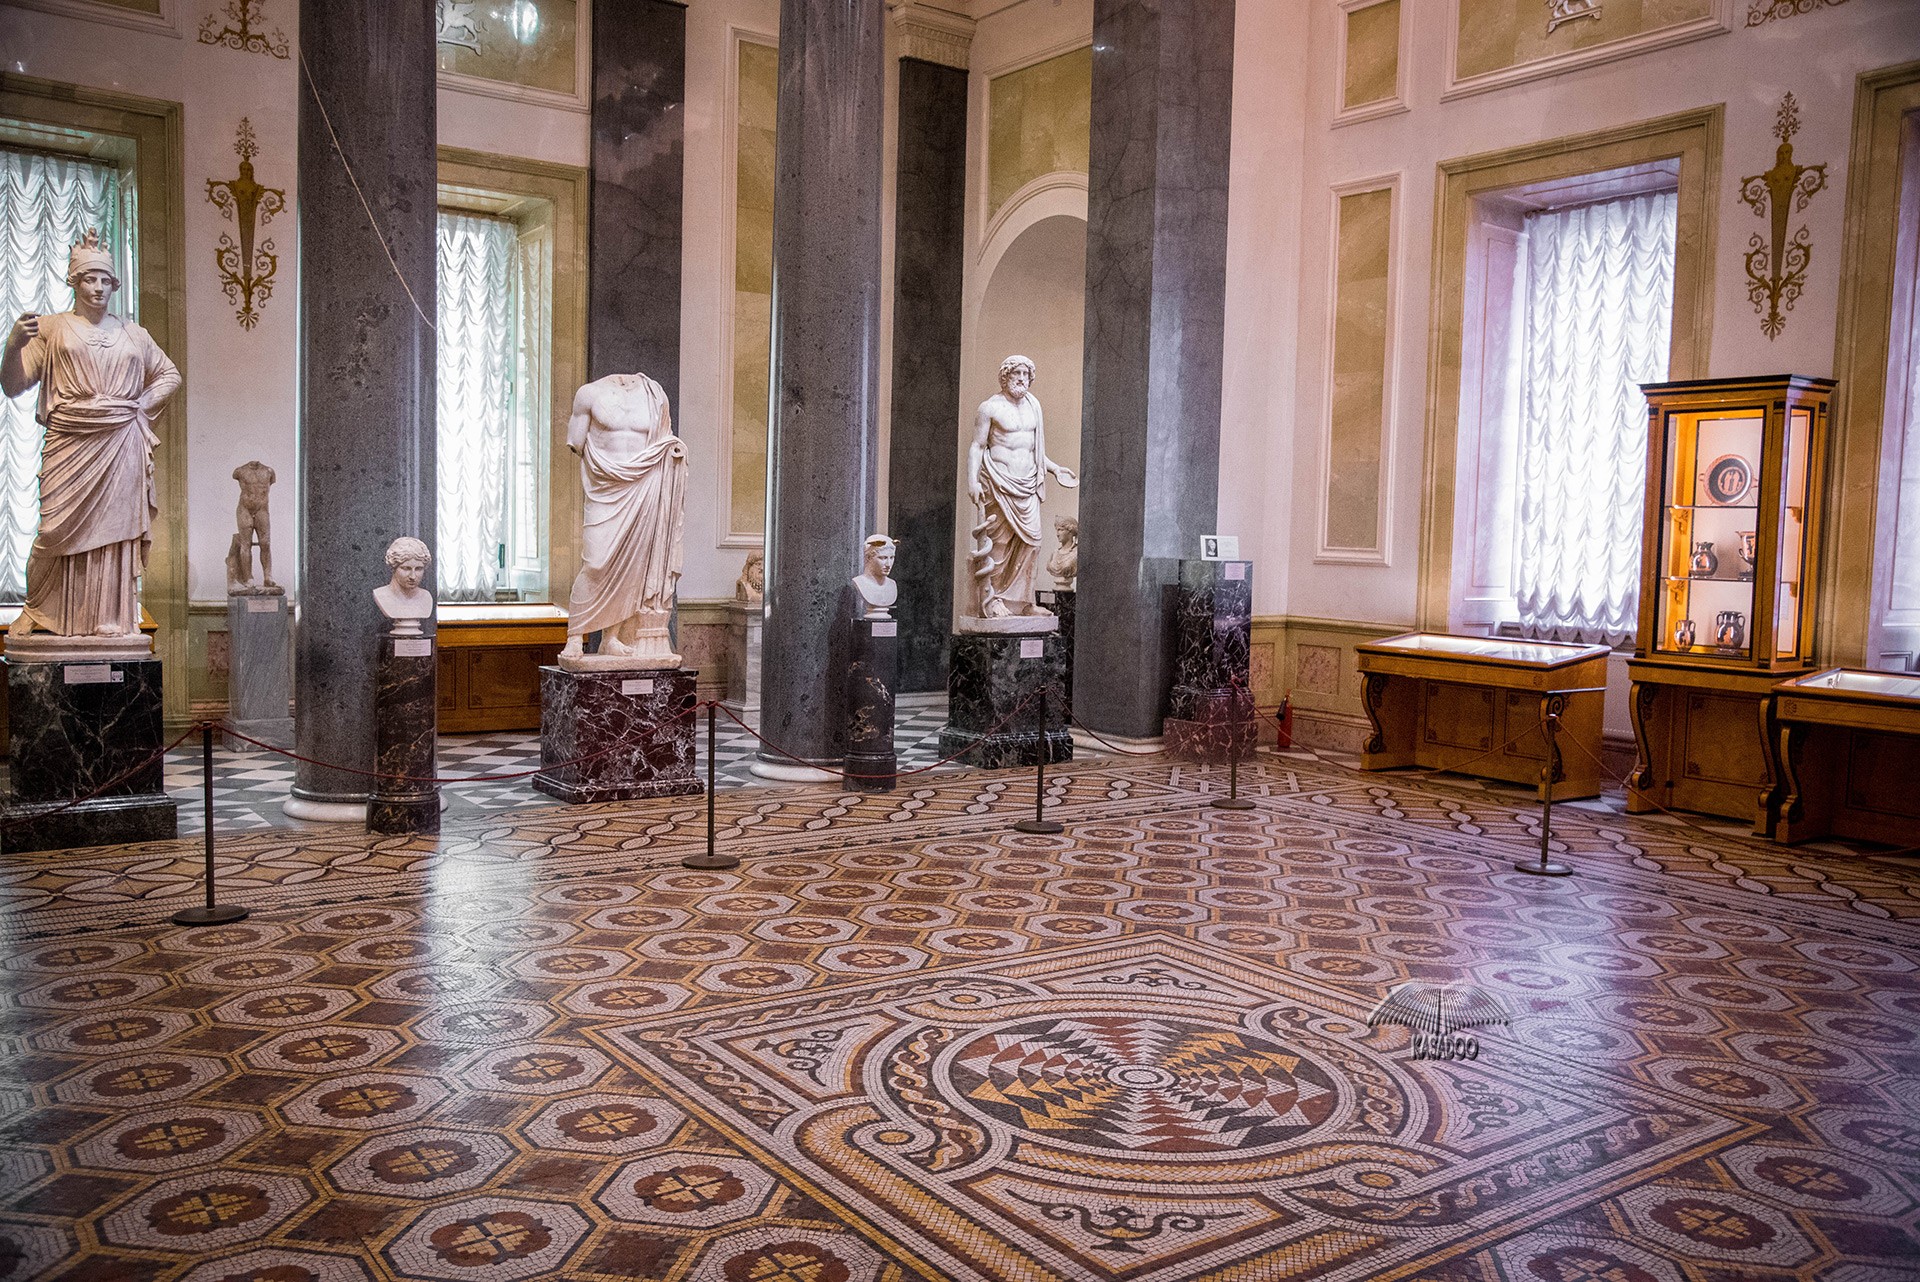 Piso de mosaico en Hermitage